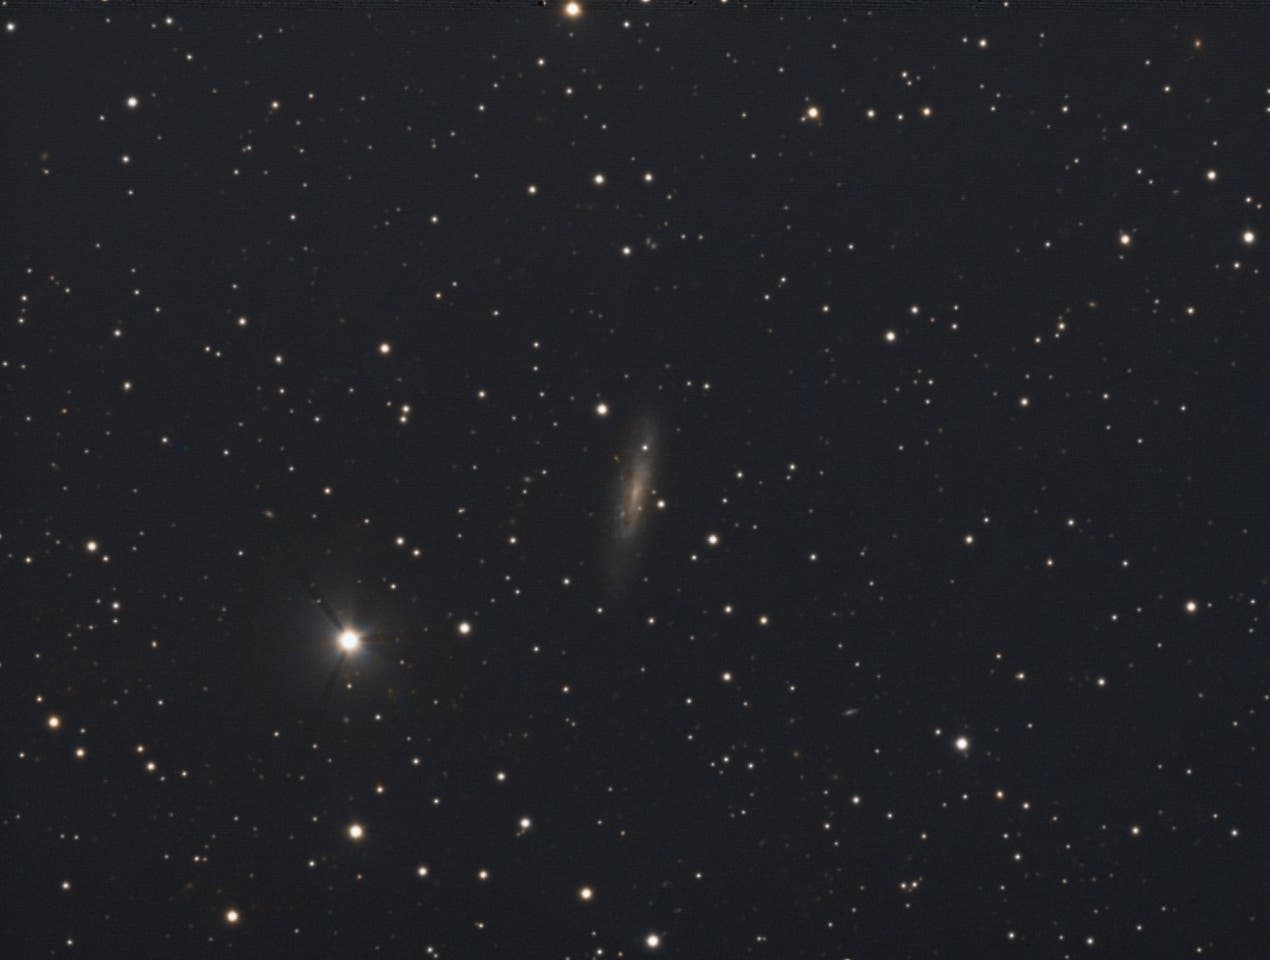 NGC 6689/90